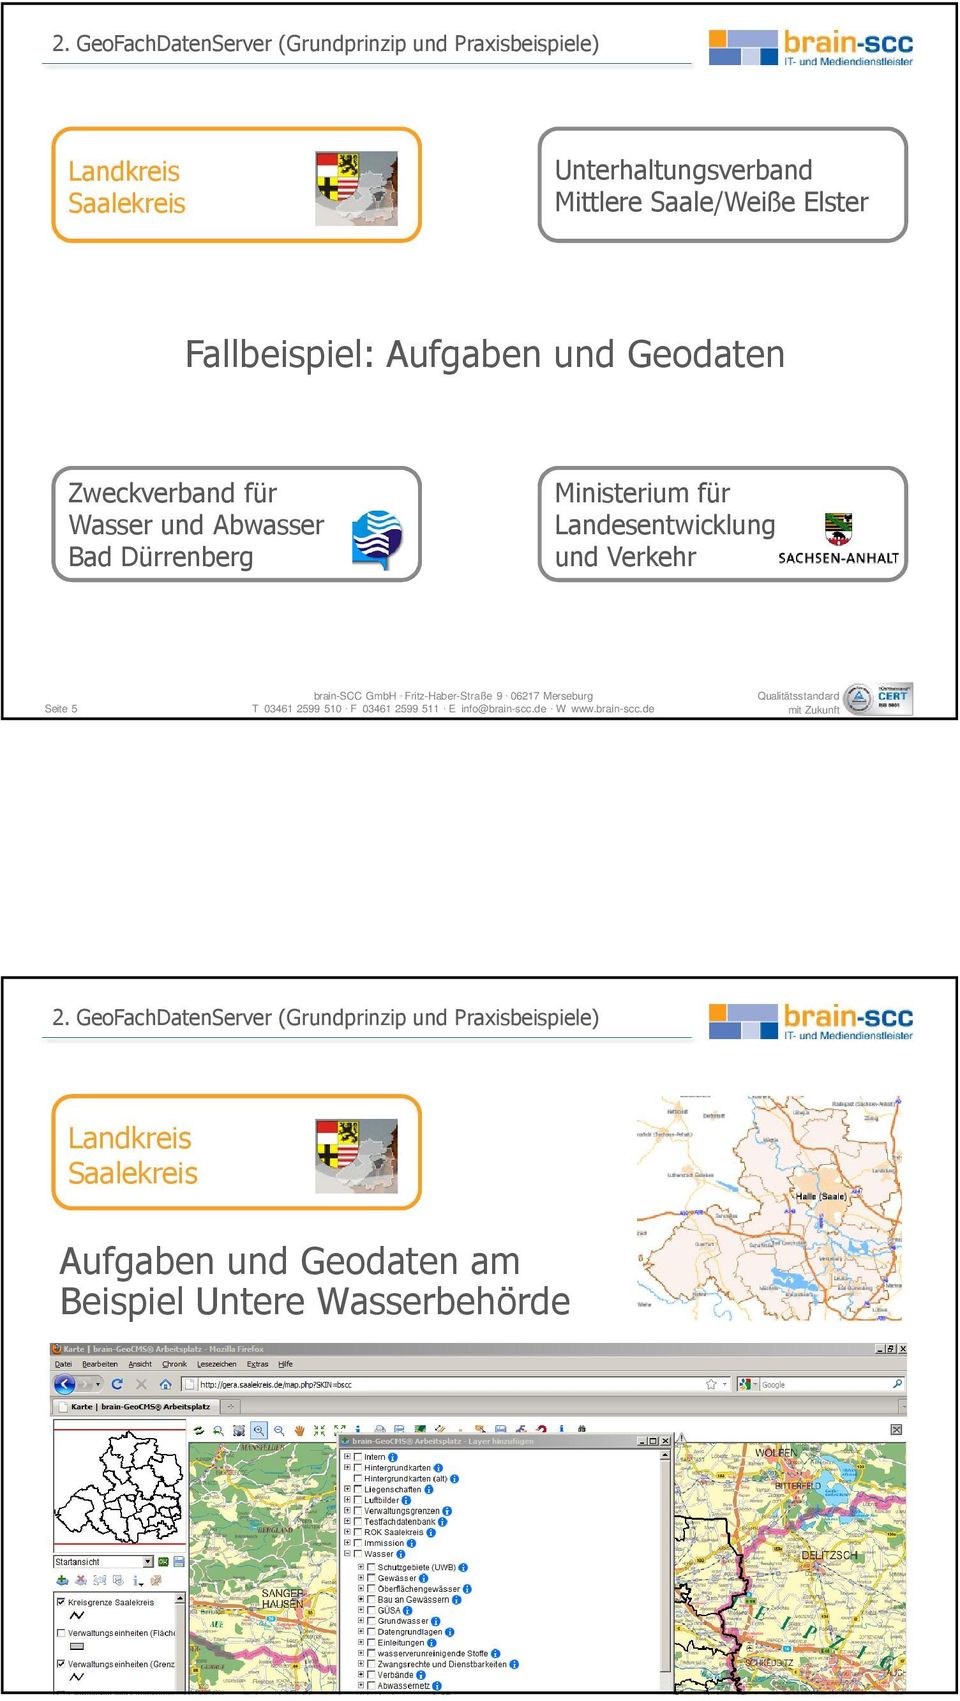 Abwasser Bad Dürrenberg Ministerium für Landesentwicklung und Verkehr